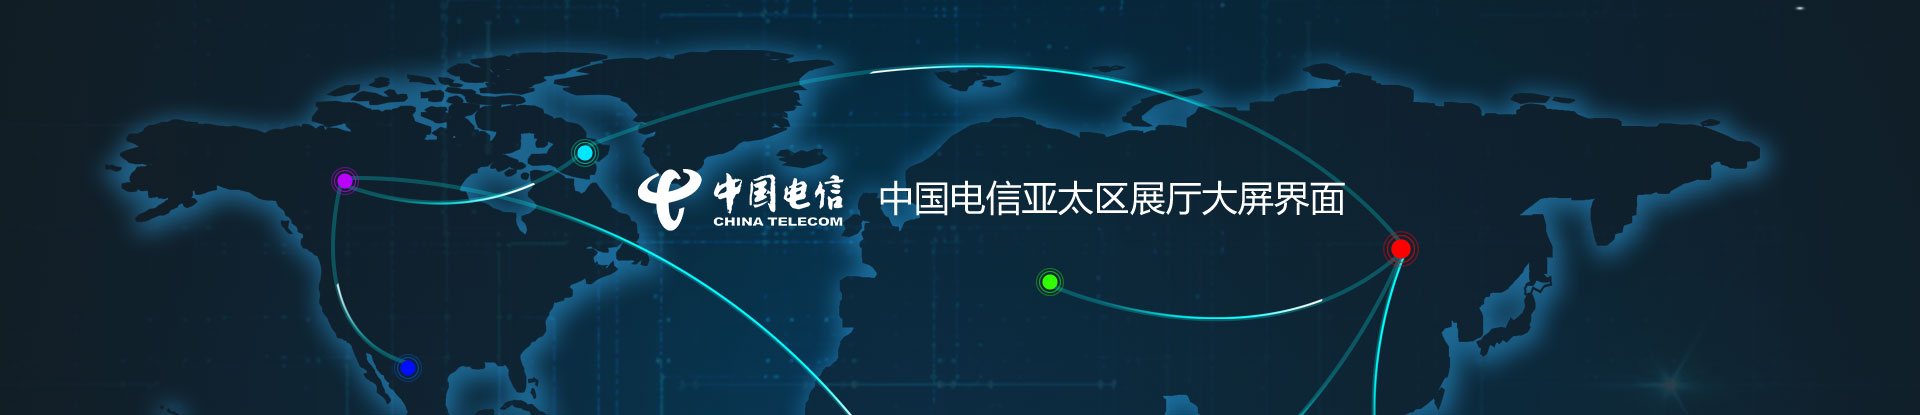 华晨阳科技中国电信亚太区展厅大屏界面设计